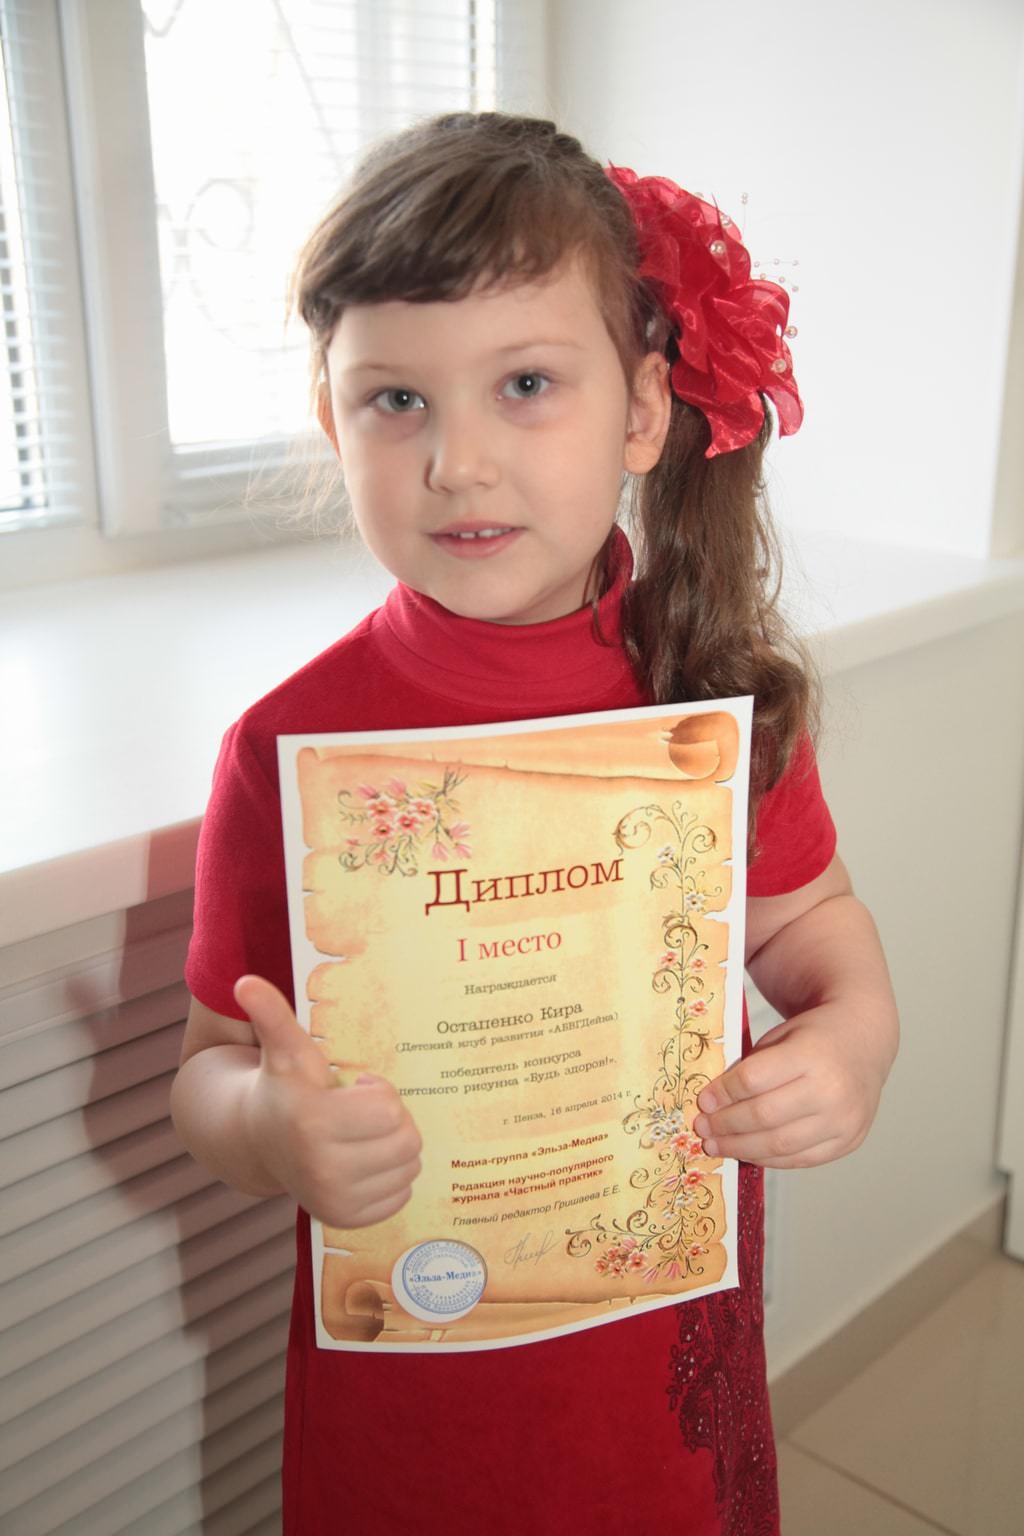 Клиника "VIP-Стоматология" выступила генеральным спонсором конкурса детского рисунка